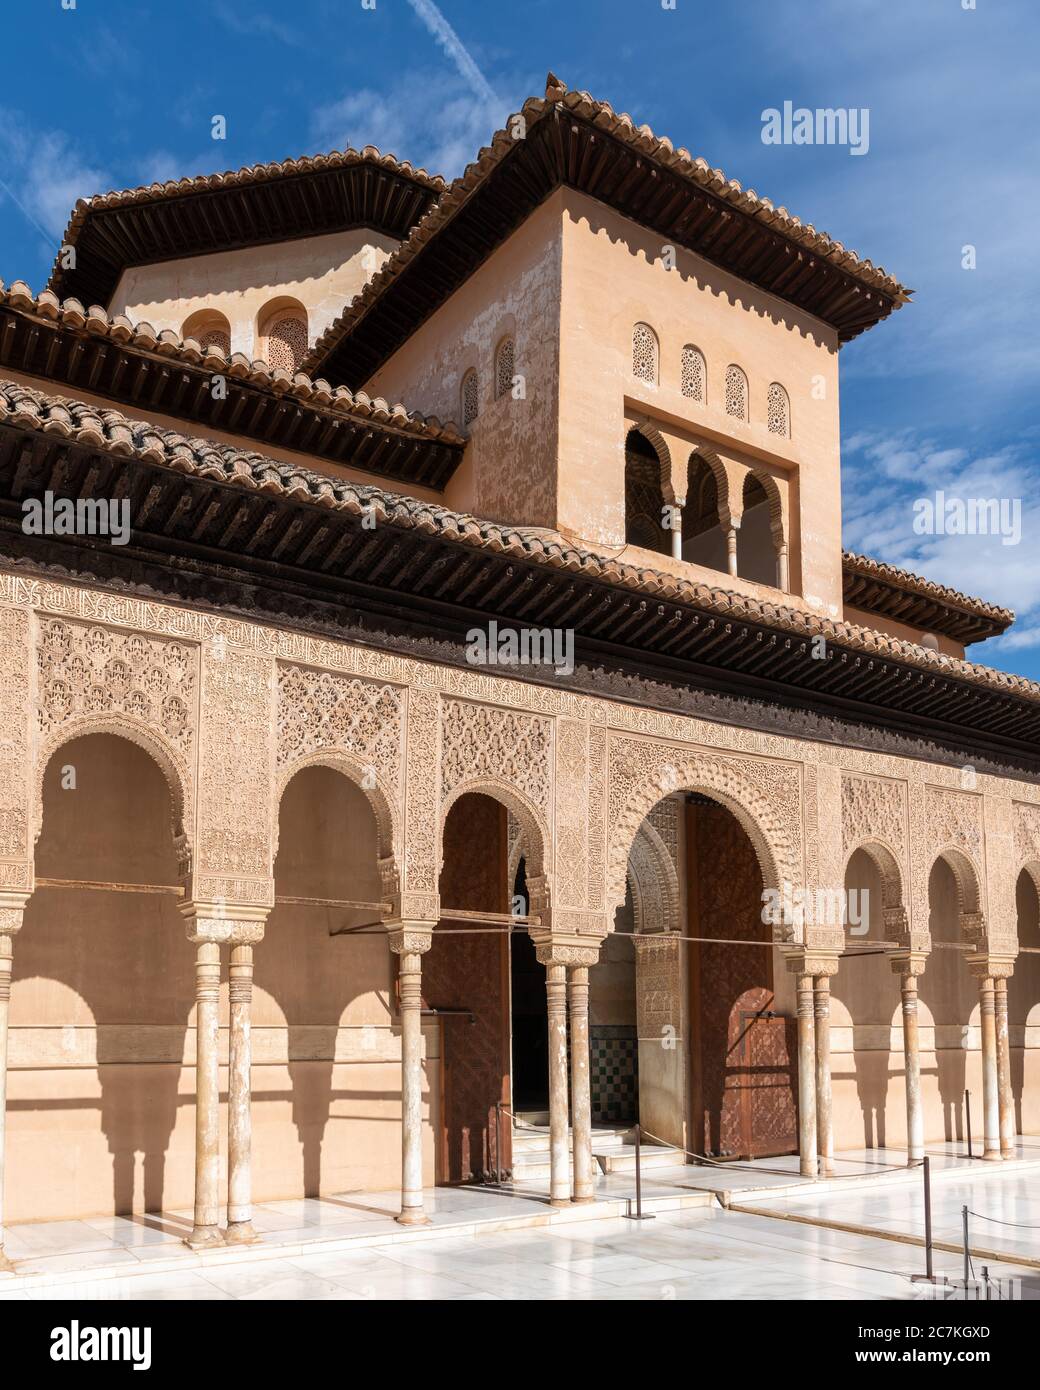 La salle des deux Sœurs s'élève au-dessus de la façade d'arches ornées dans la cour des Lions Banque D'Images